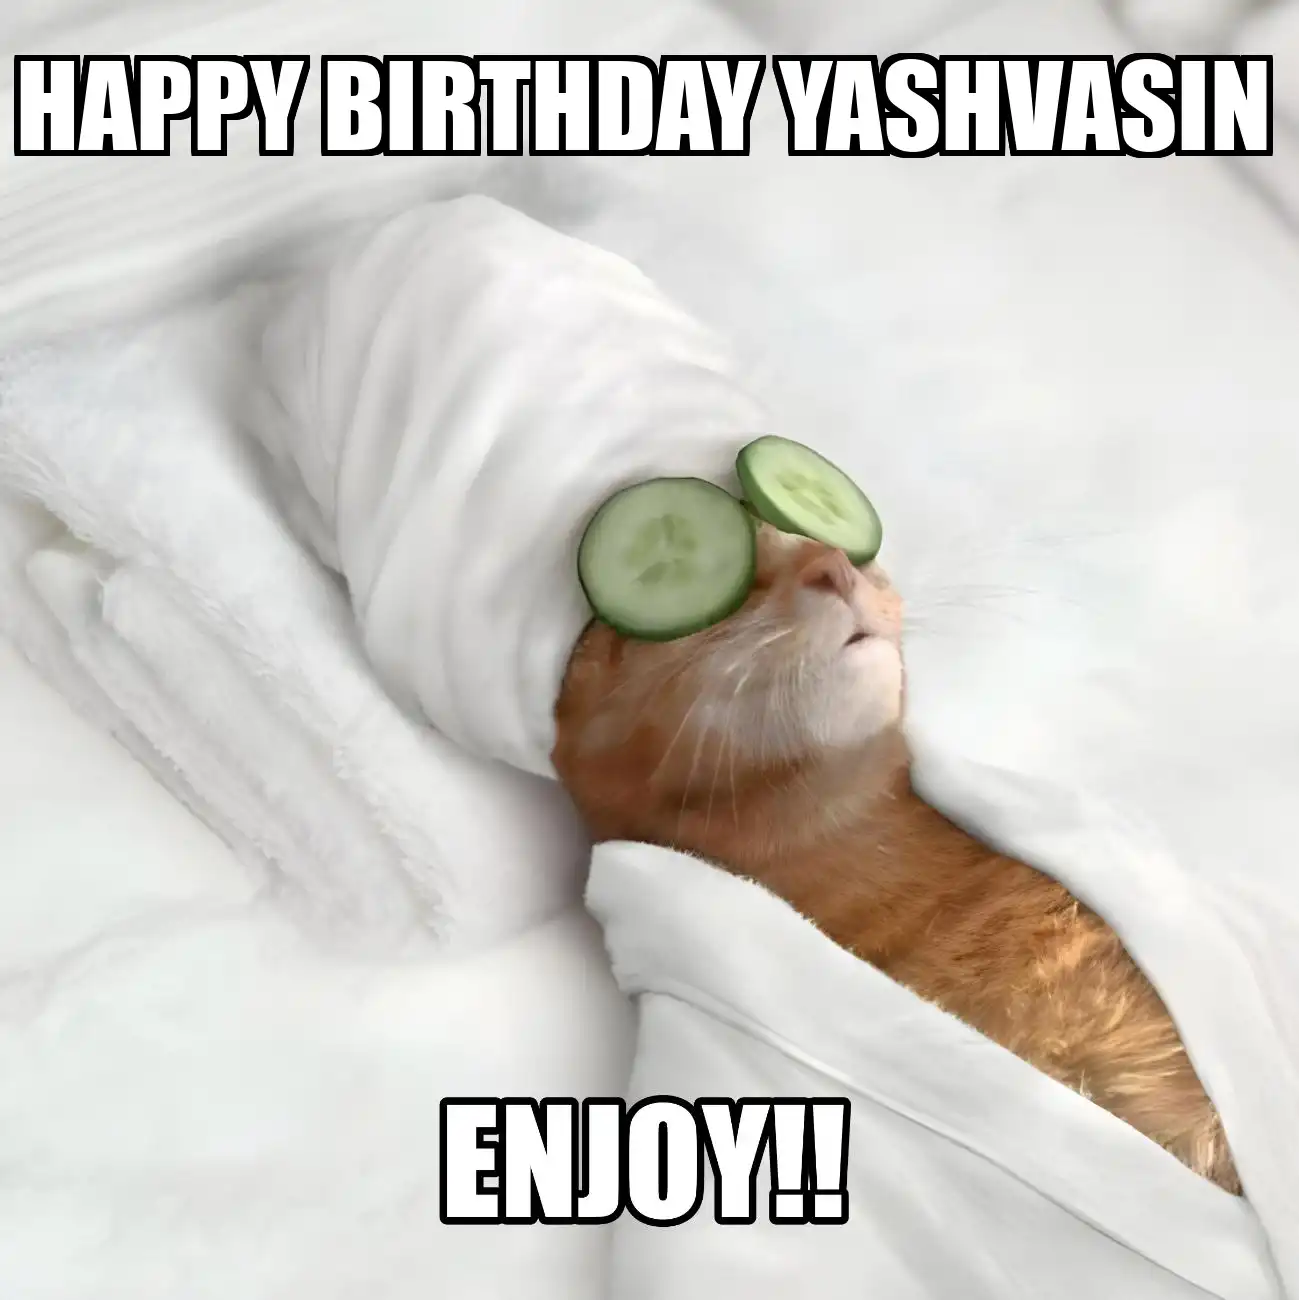 Happy Birthday Yashvasin Enjoy Cat Meme